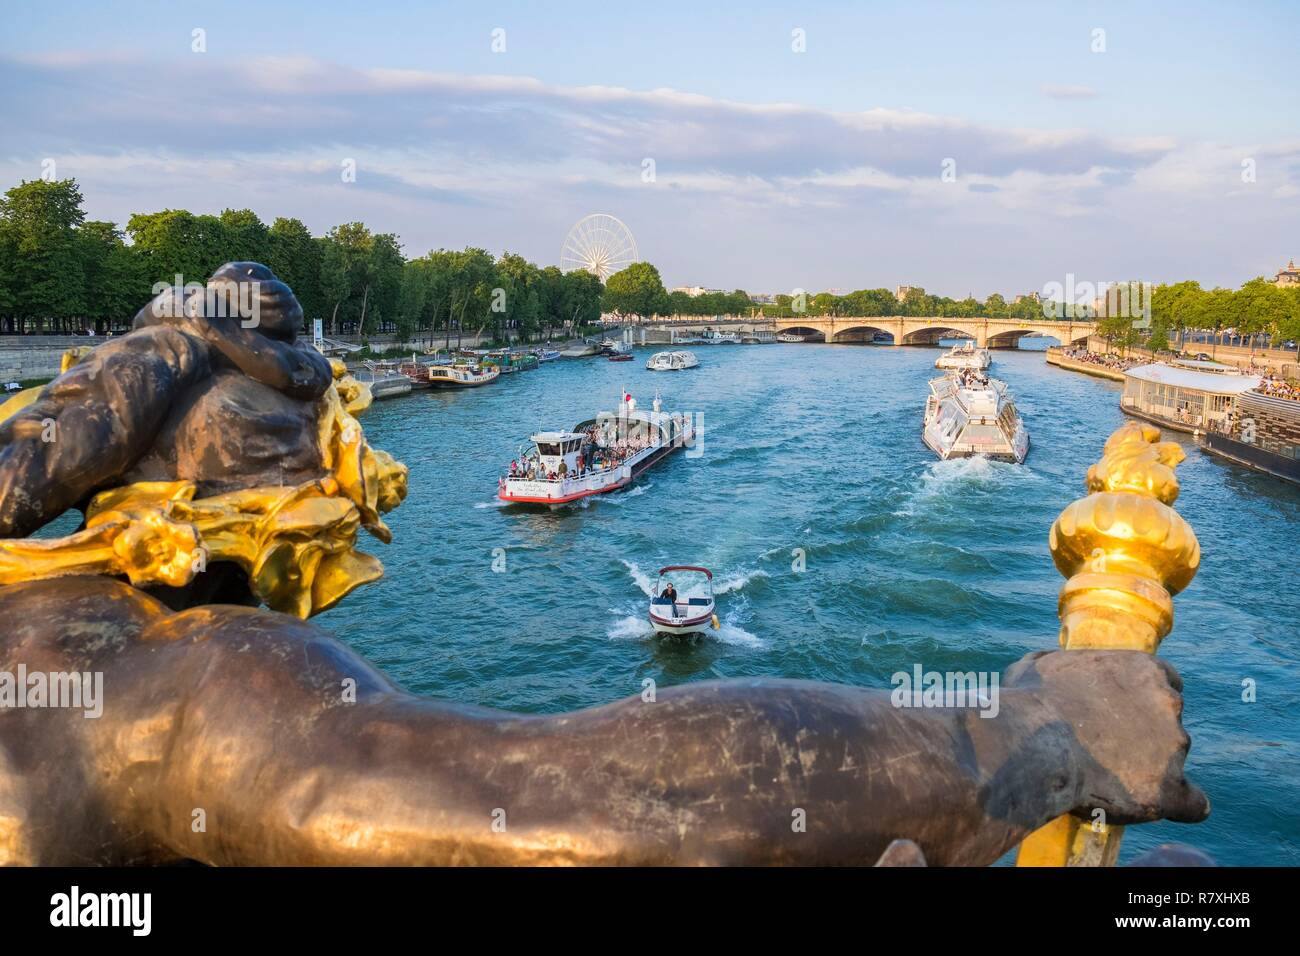 Frankreich, Paris, Bereich als Weltkulturerbe von der UNESCO, der Alexandre III Brücke und die Flotte Boote durch die Statue der Genie de l'Eau Stockfoto